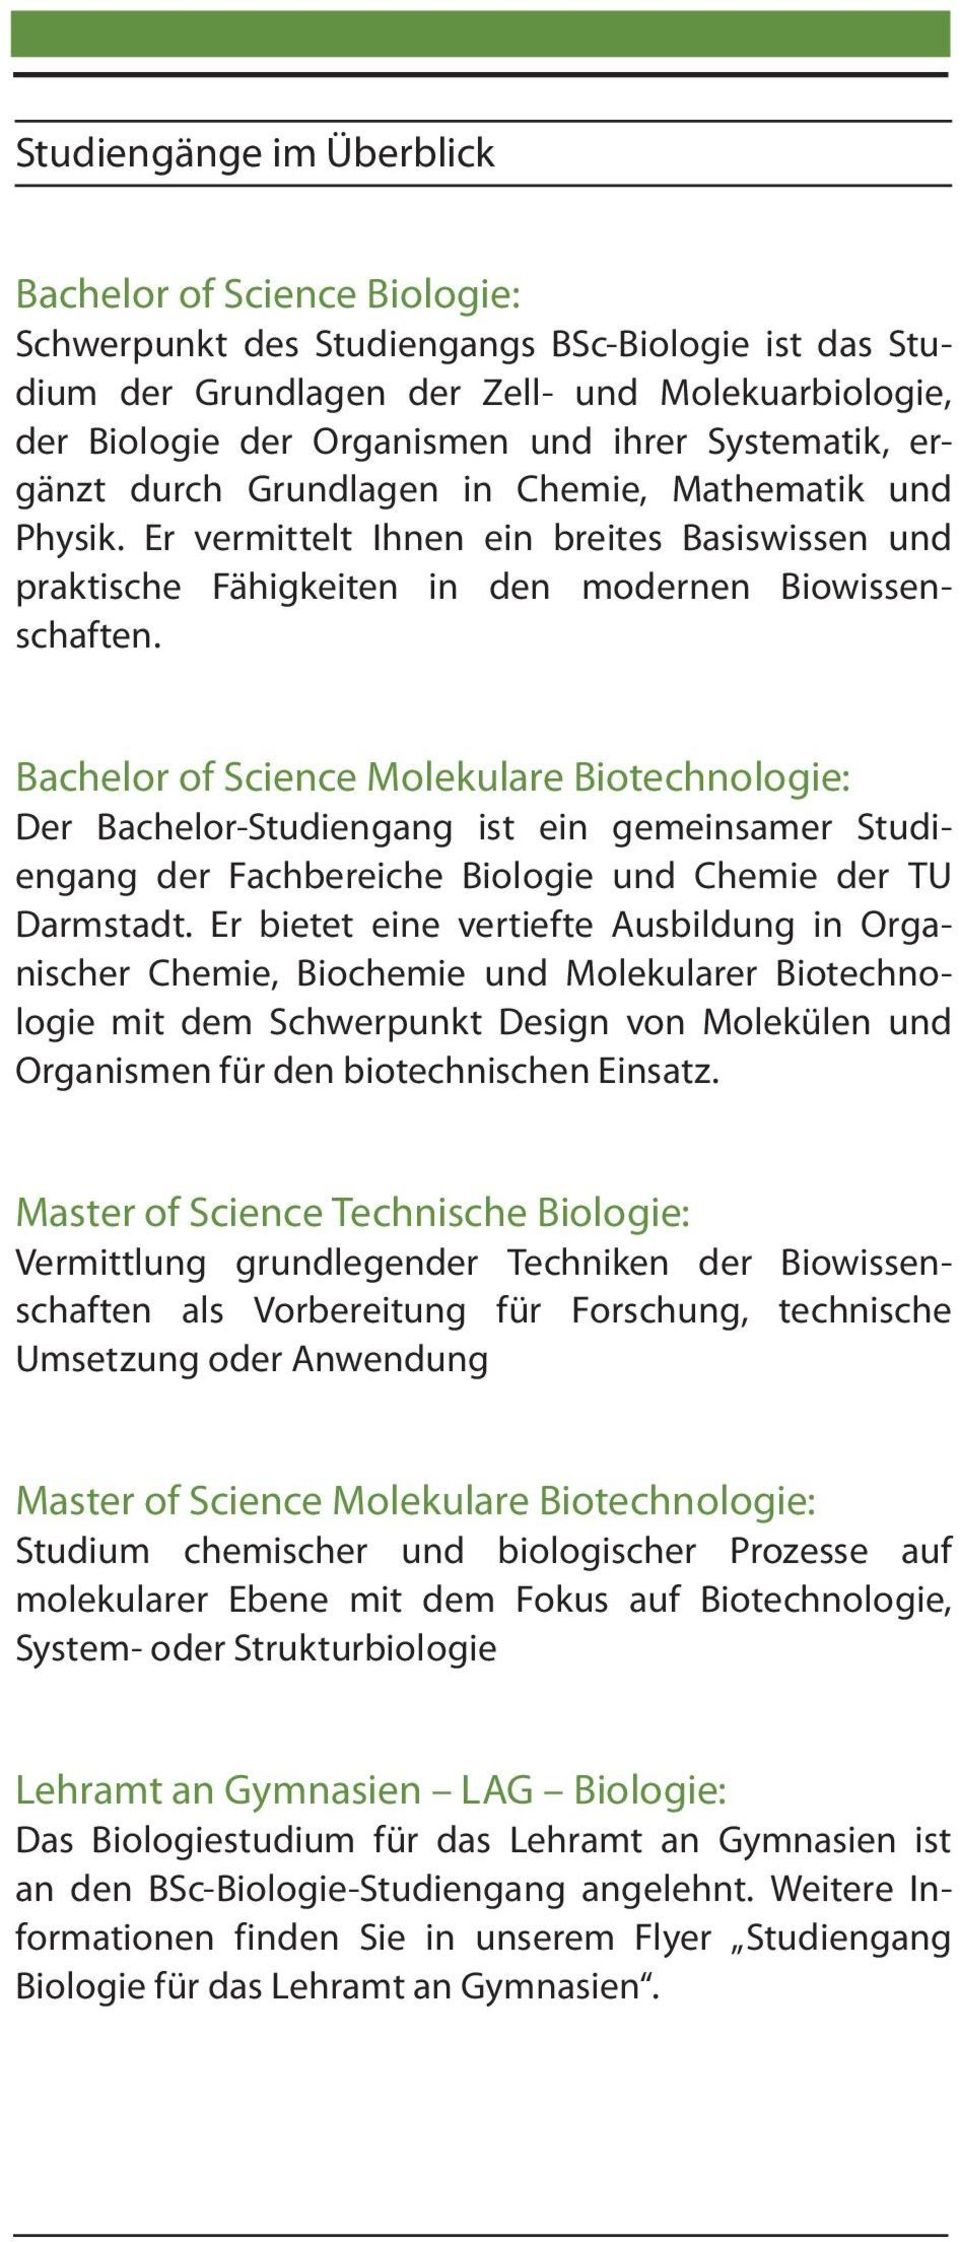 Bachelor of Science Molekulare Biotechnologie: Der Bachelor-Studiengang ist ein gemeinsamer Studiengang der Fachbereiche Biologie und Chemie der TU Darmstadt.